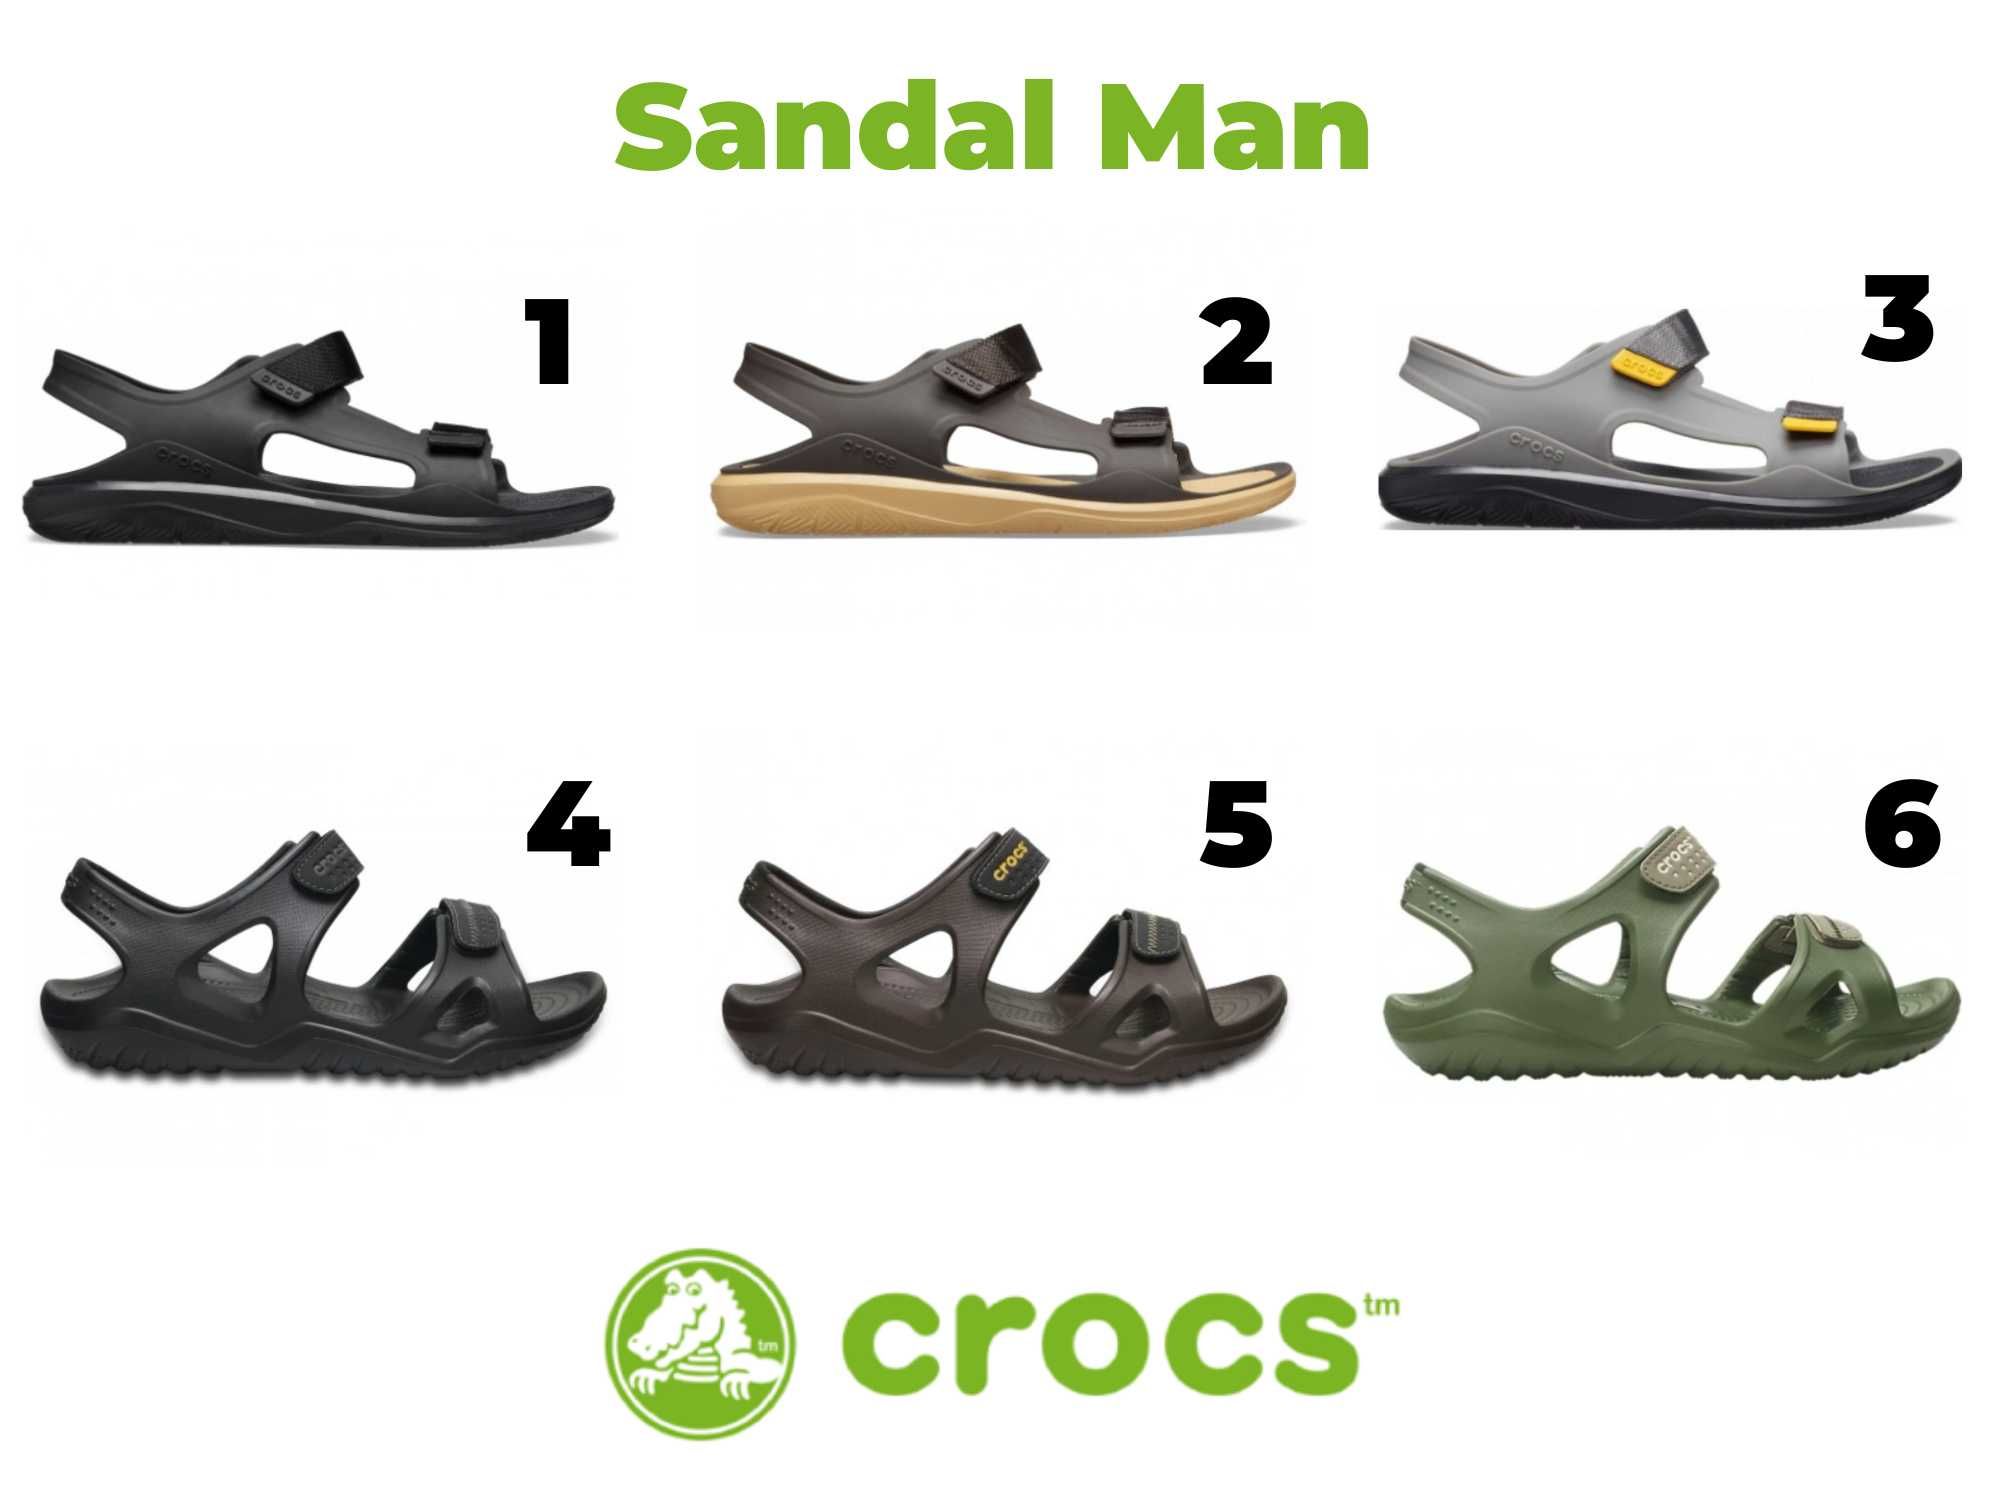 Літні мягкі сандалі для чоловіка крокс сандалі Crocs Sandal Man